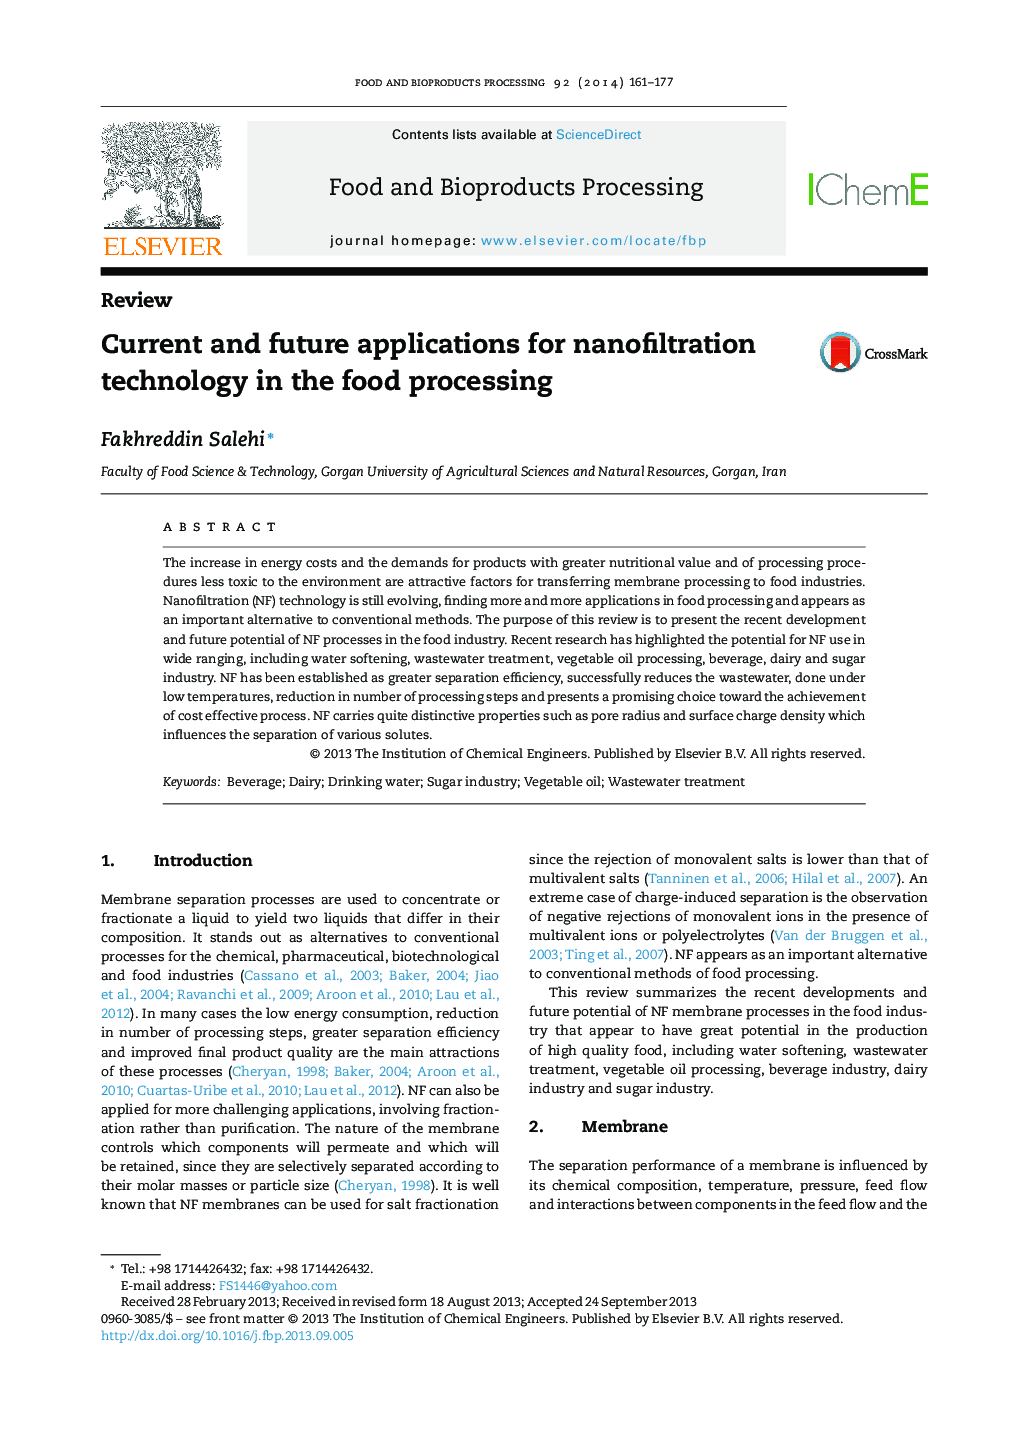 کاربردهای فعلی و آینده برای فن آوری نانوفیلتراسیون در پردازش مواد غذایی 